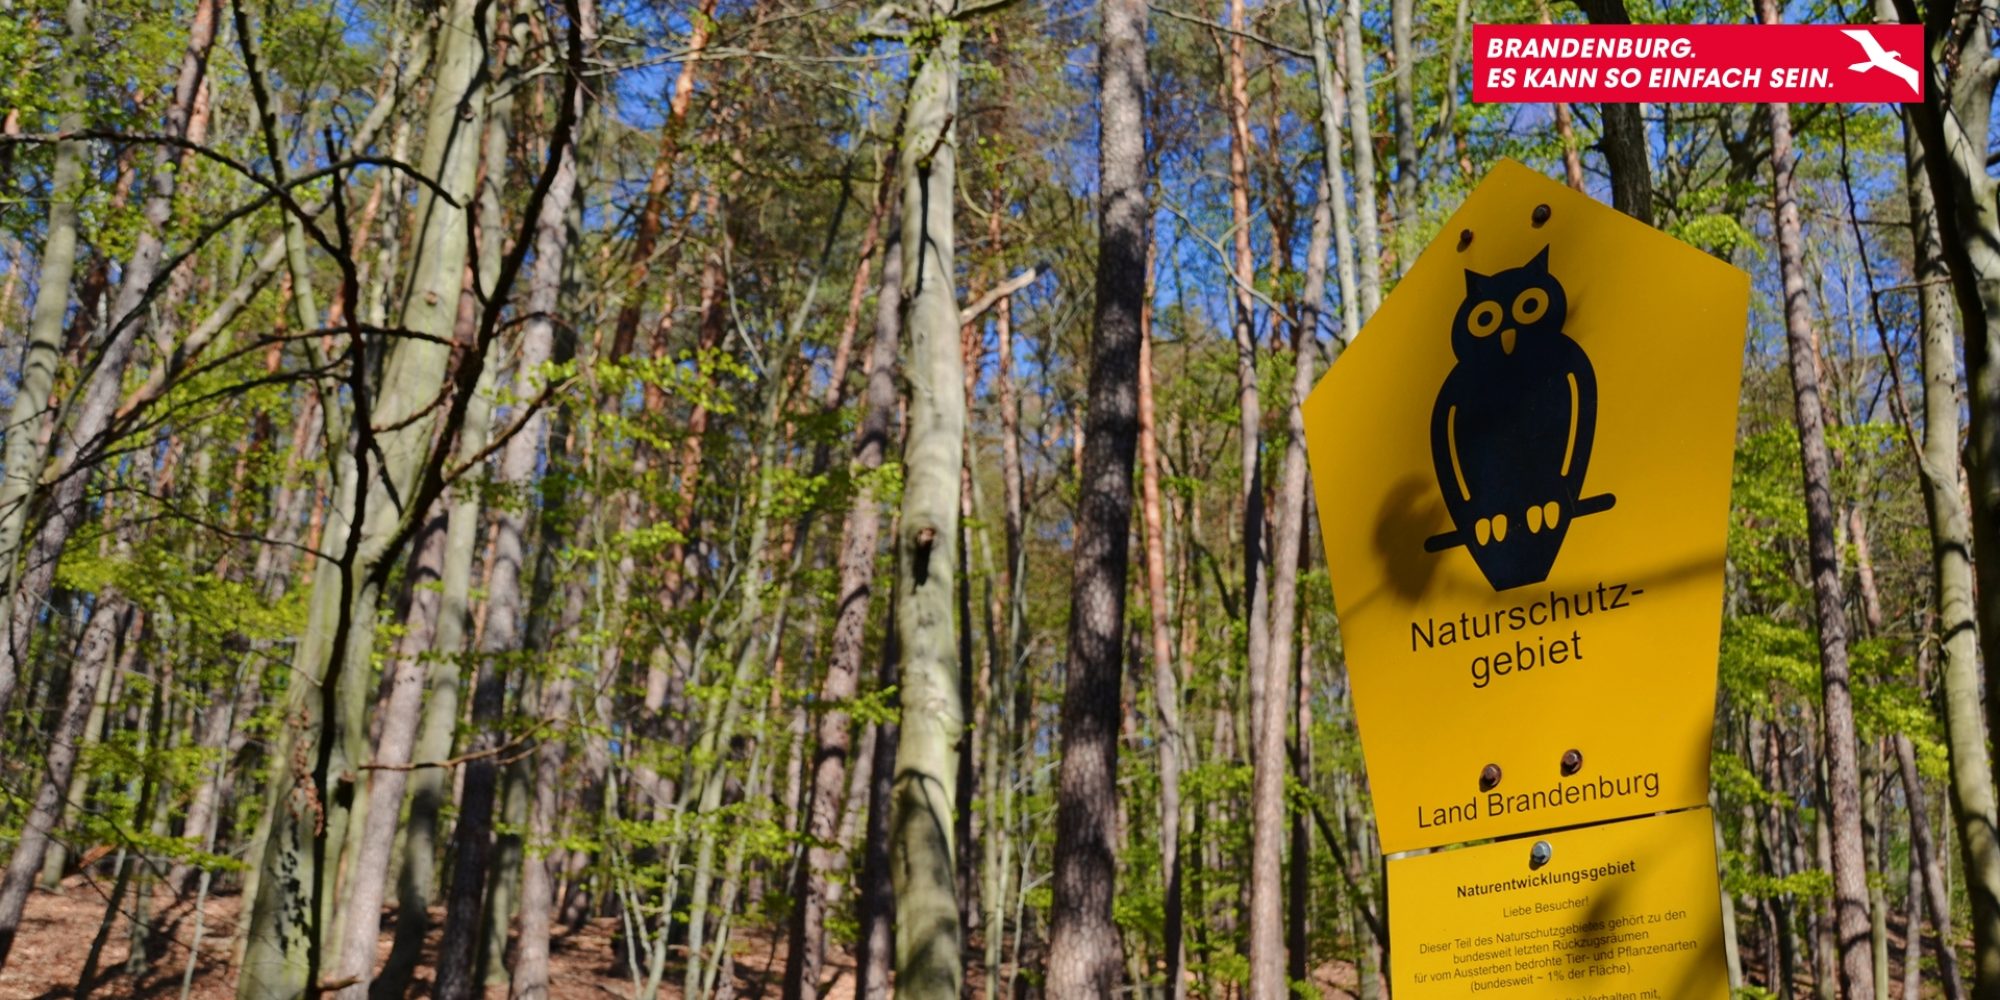 Ein Wald, in dem ein Schild mit der Aufschrift "Naturschutzgebiet" steht.